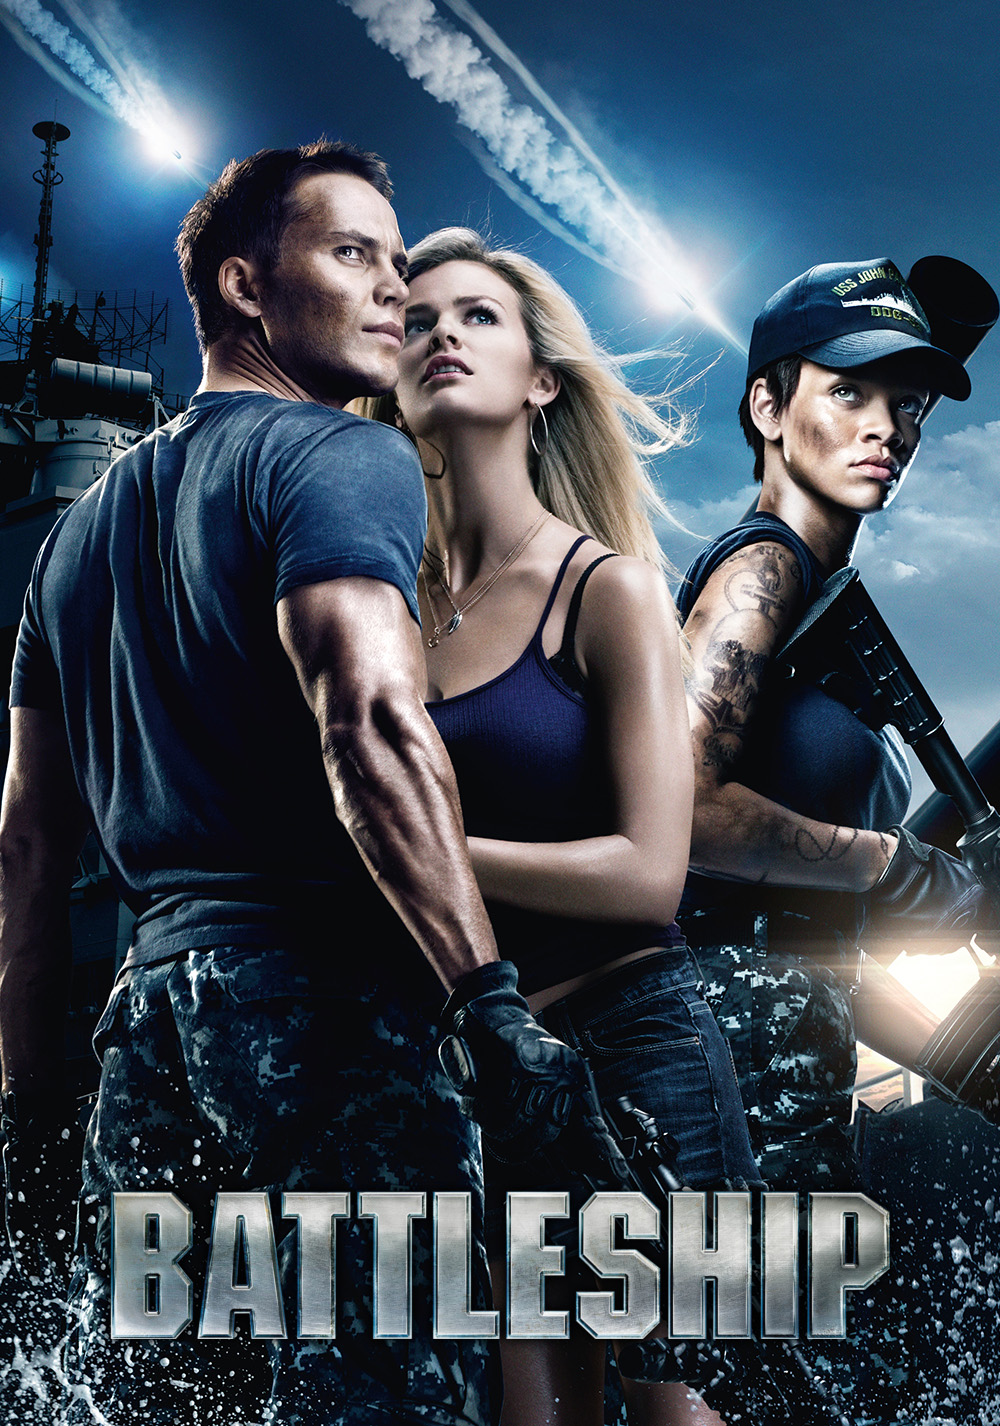 battleship movie online free no download putlockers